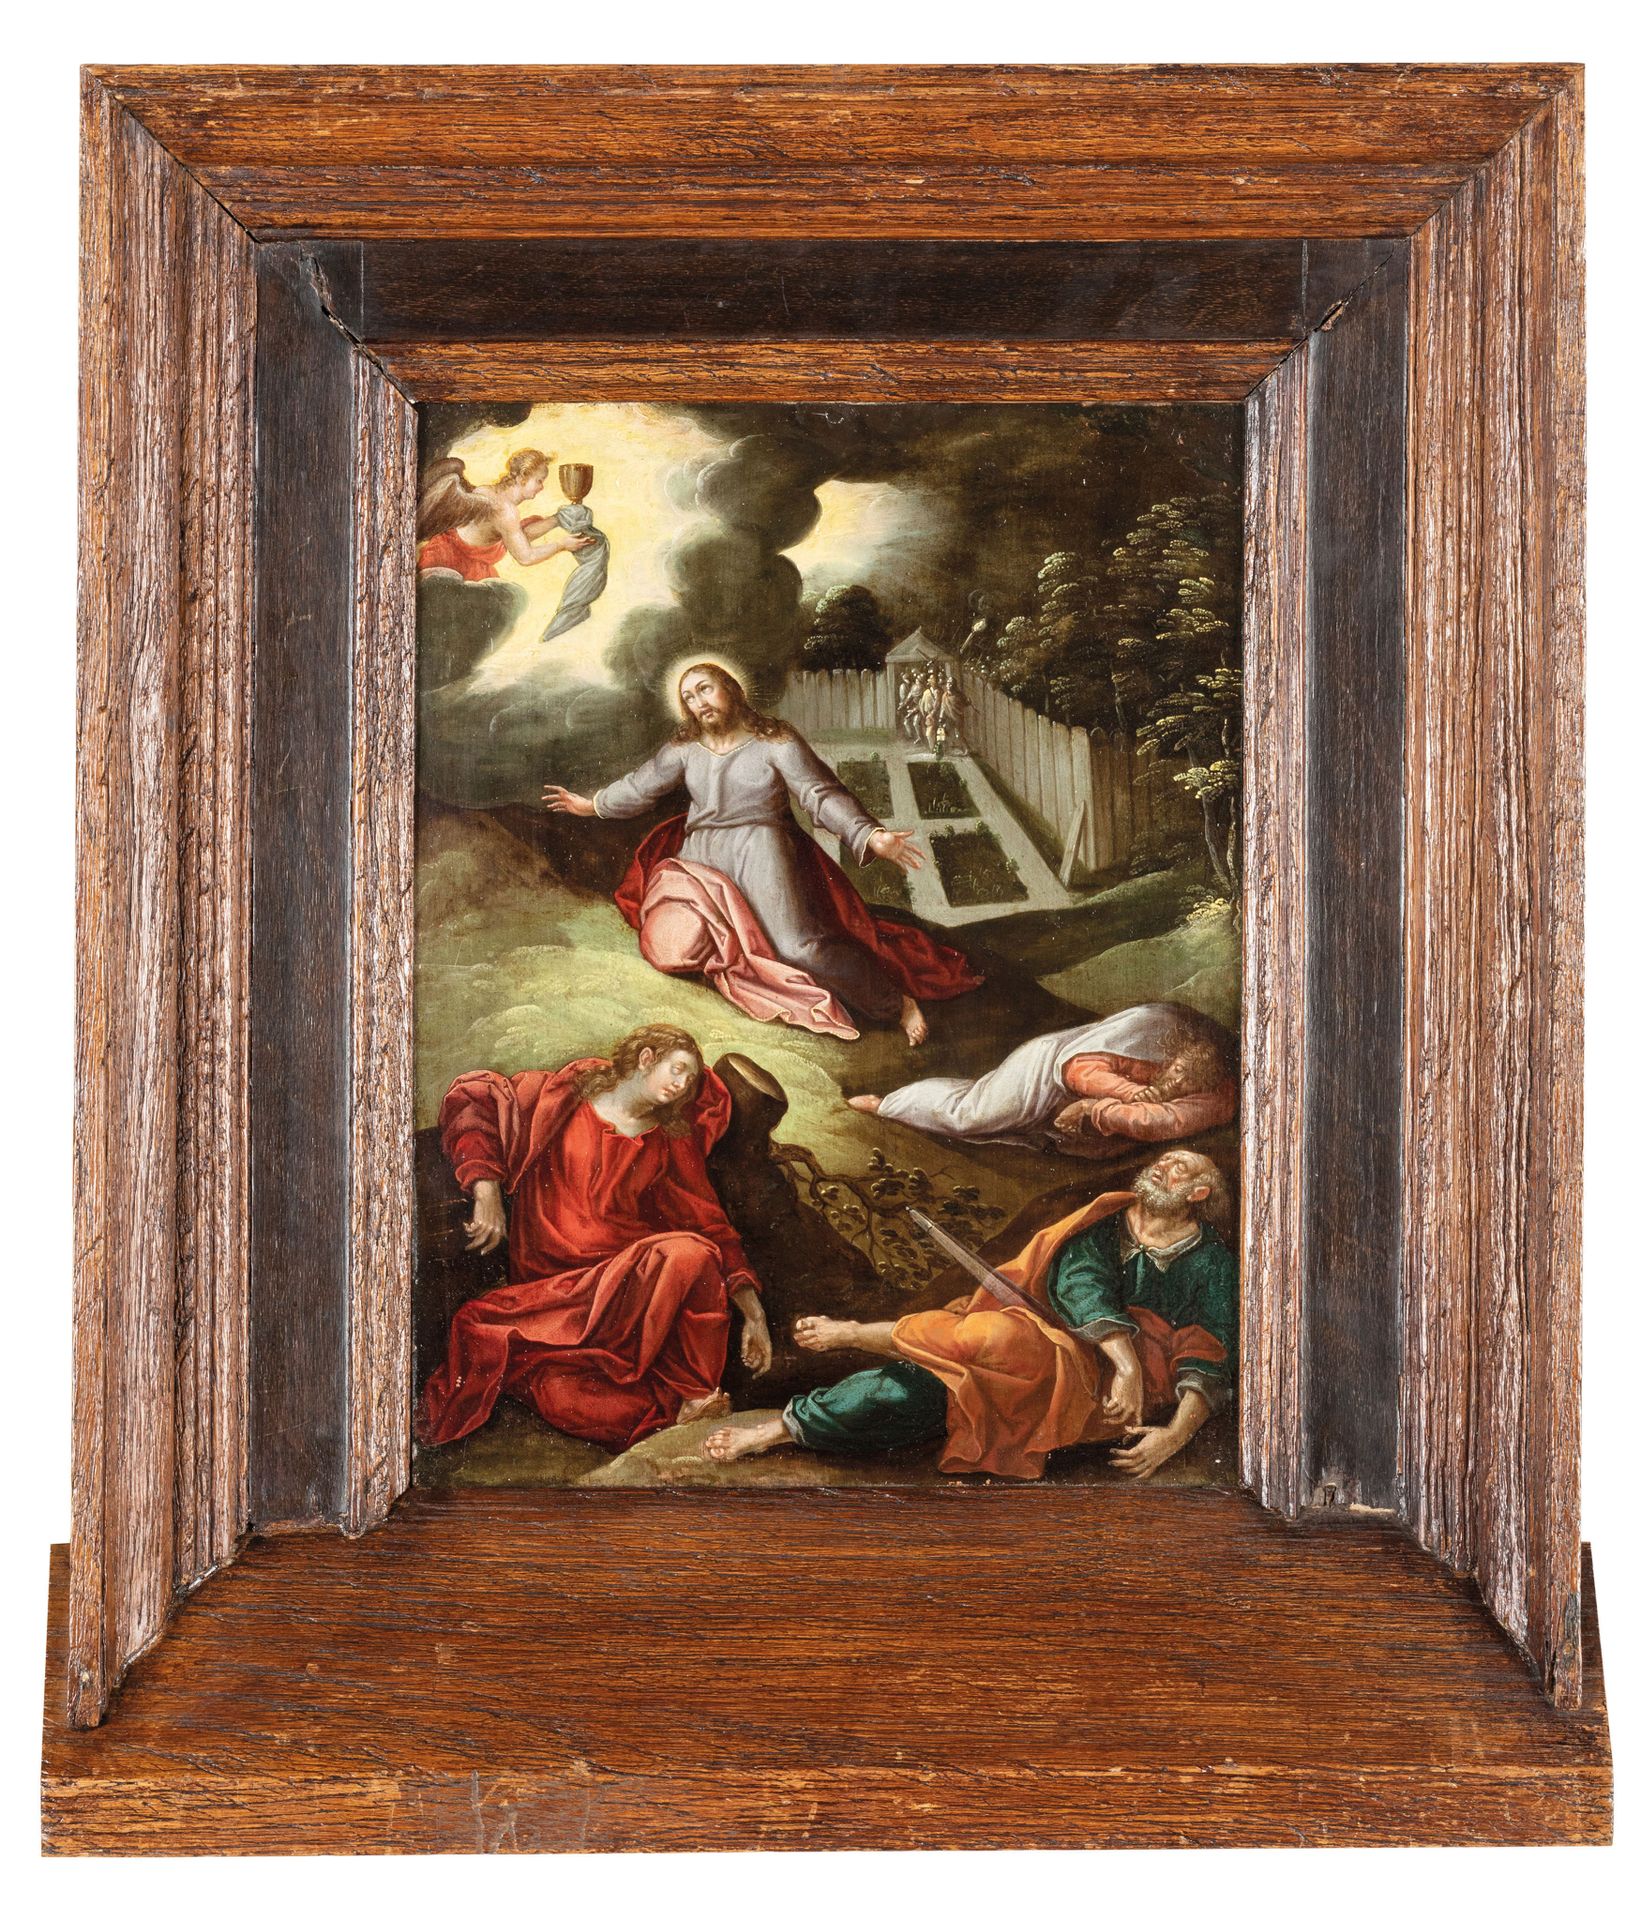 PITTORE FIAMMINGO DEL XVI-XVII SECOLO Gesù nel Getsemani
Olio su rame, cm 30X23
&hellip;